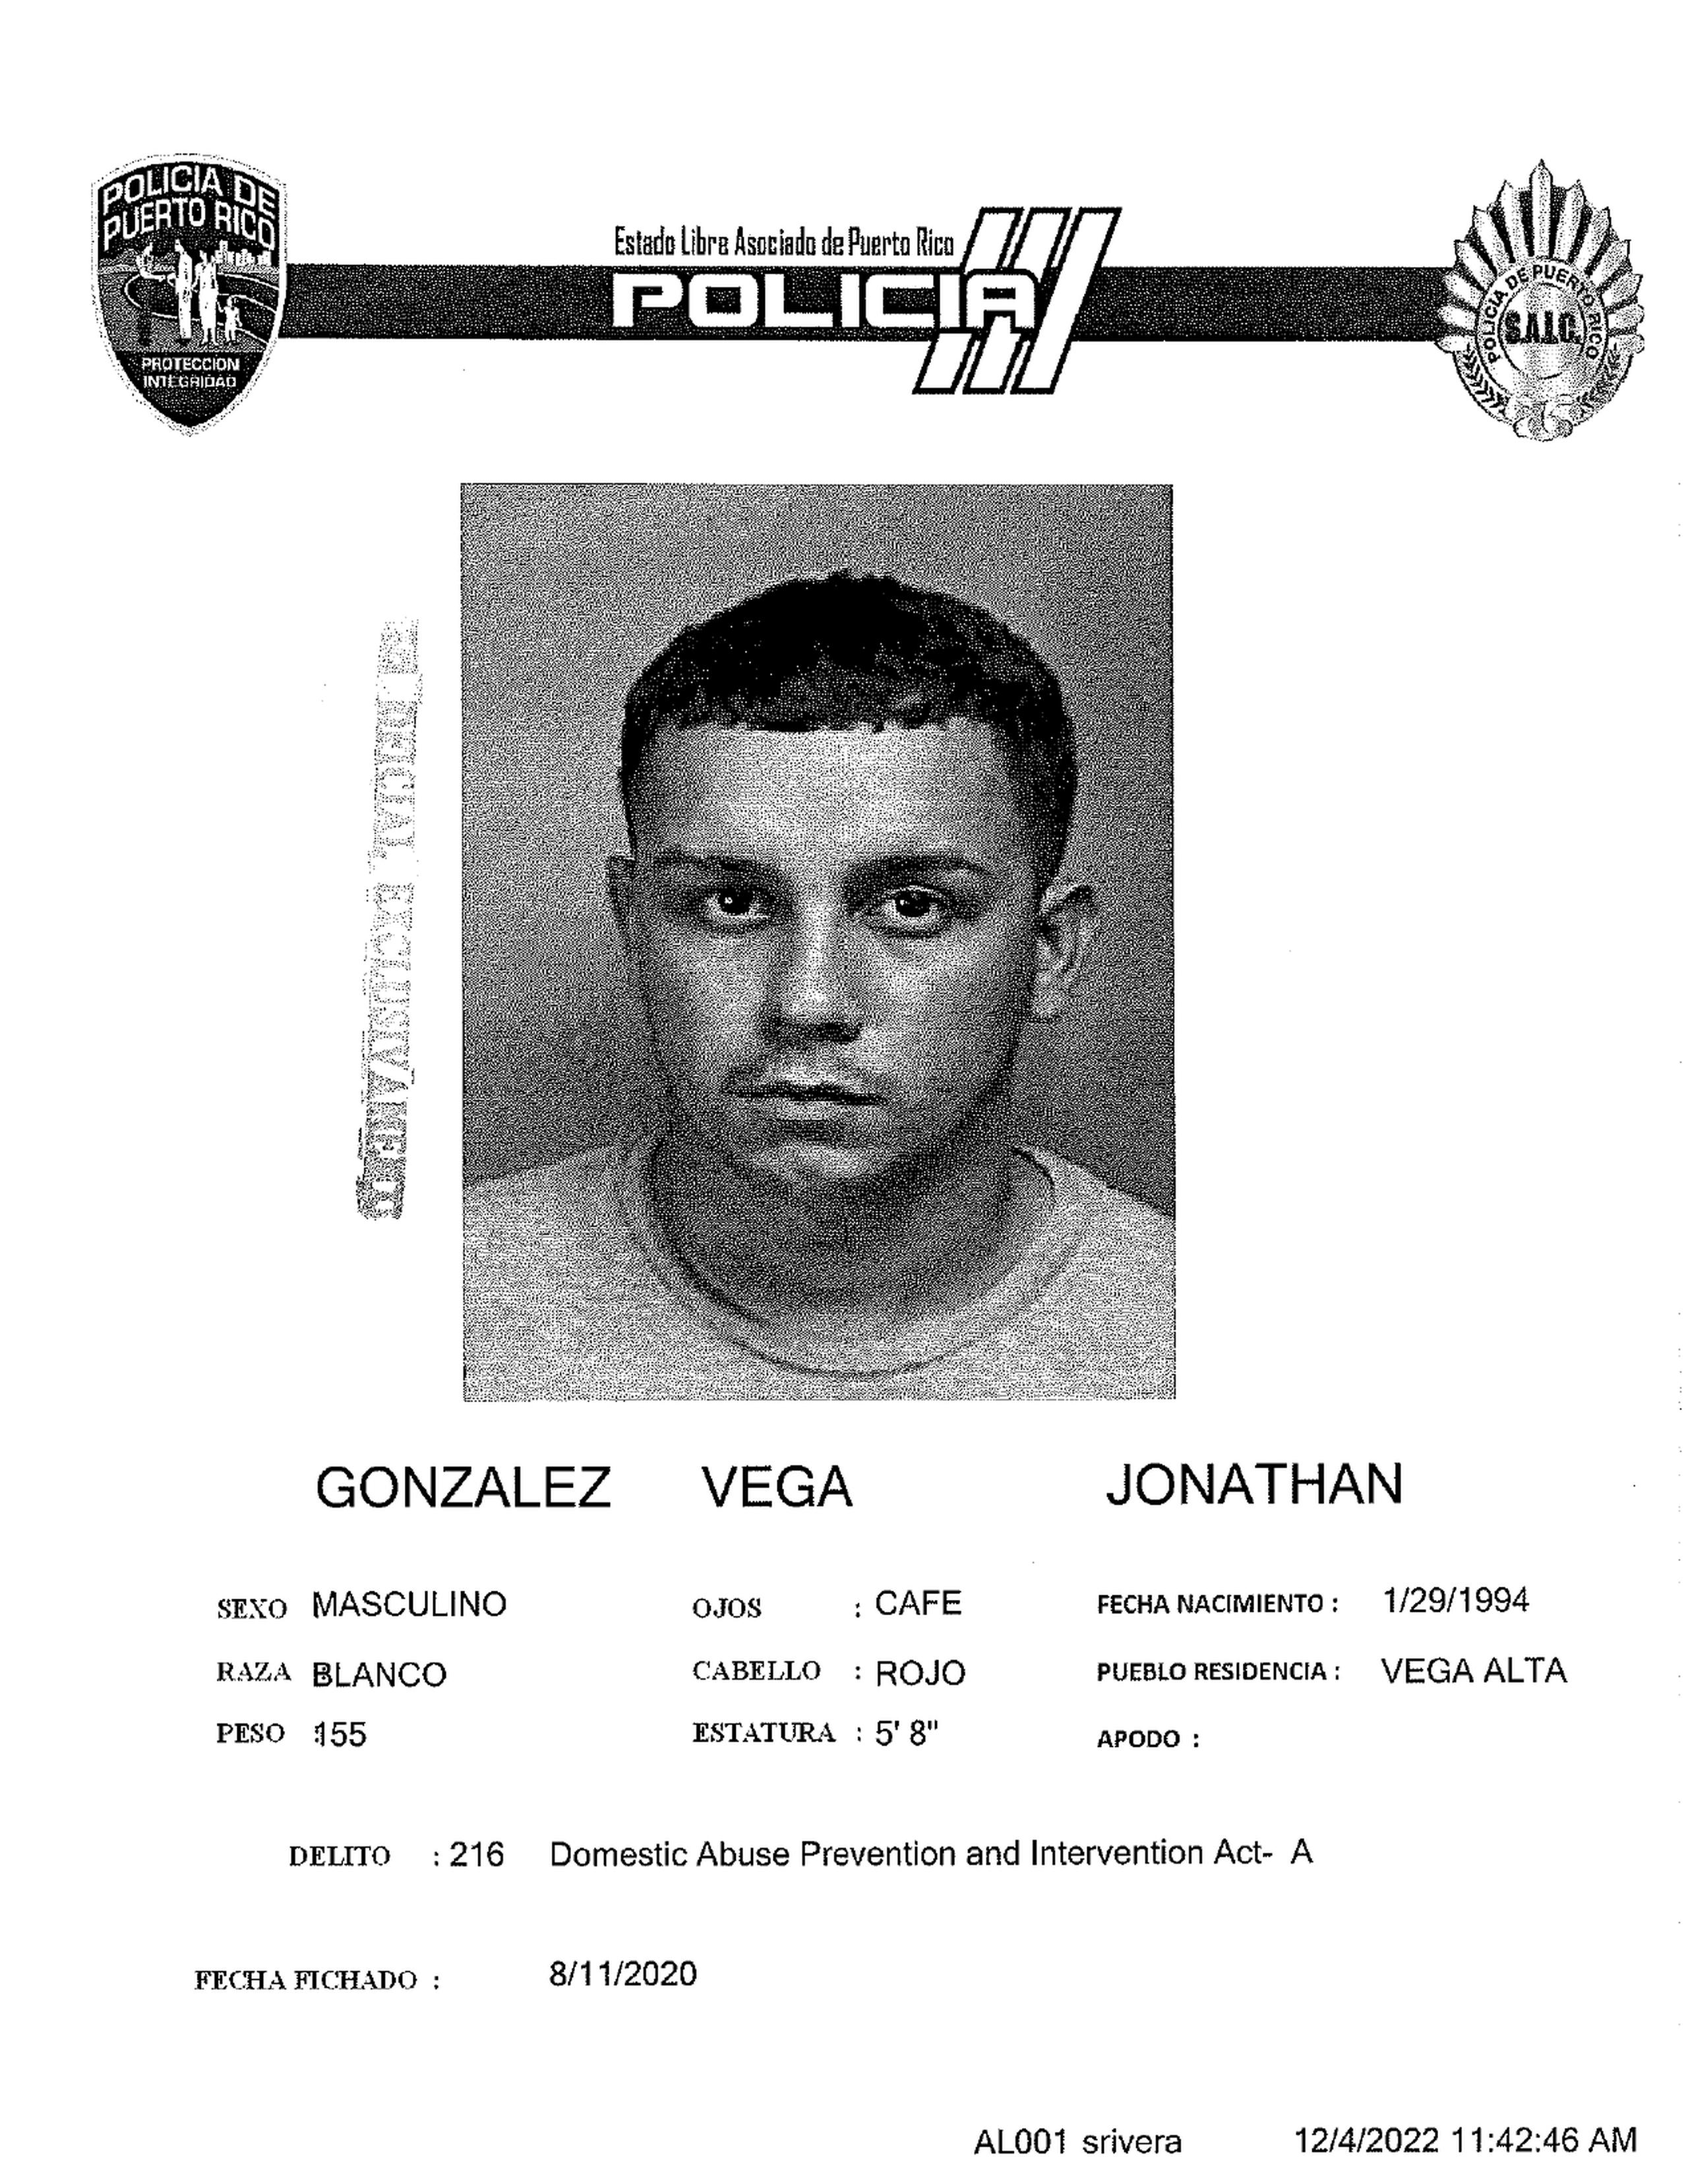 Jonathan González Vega